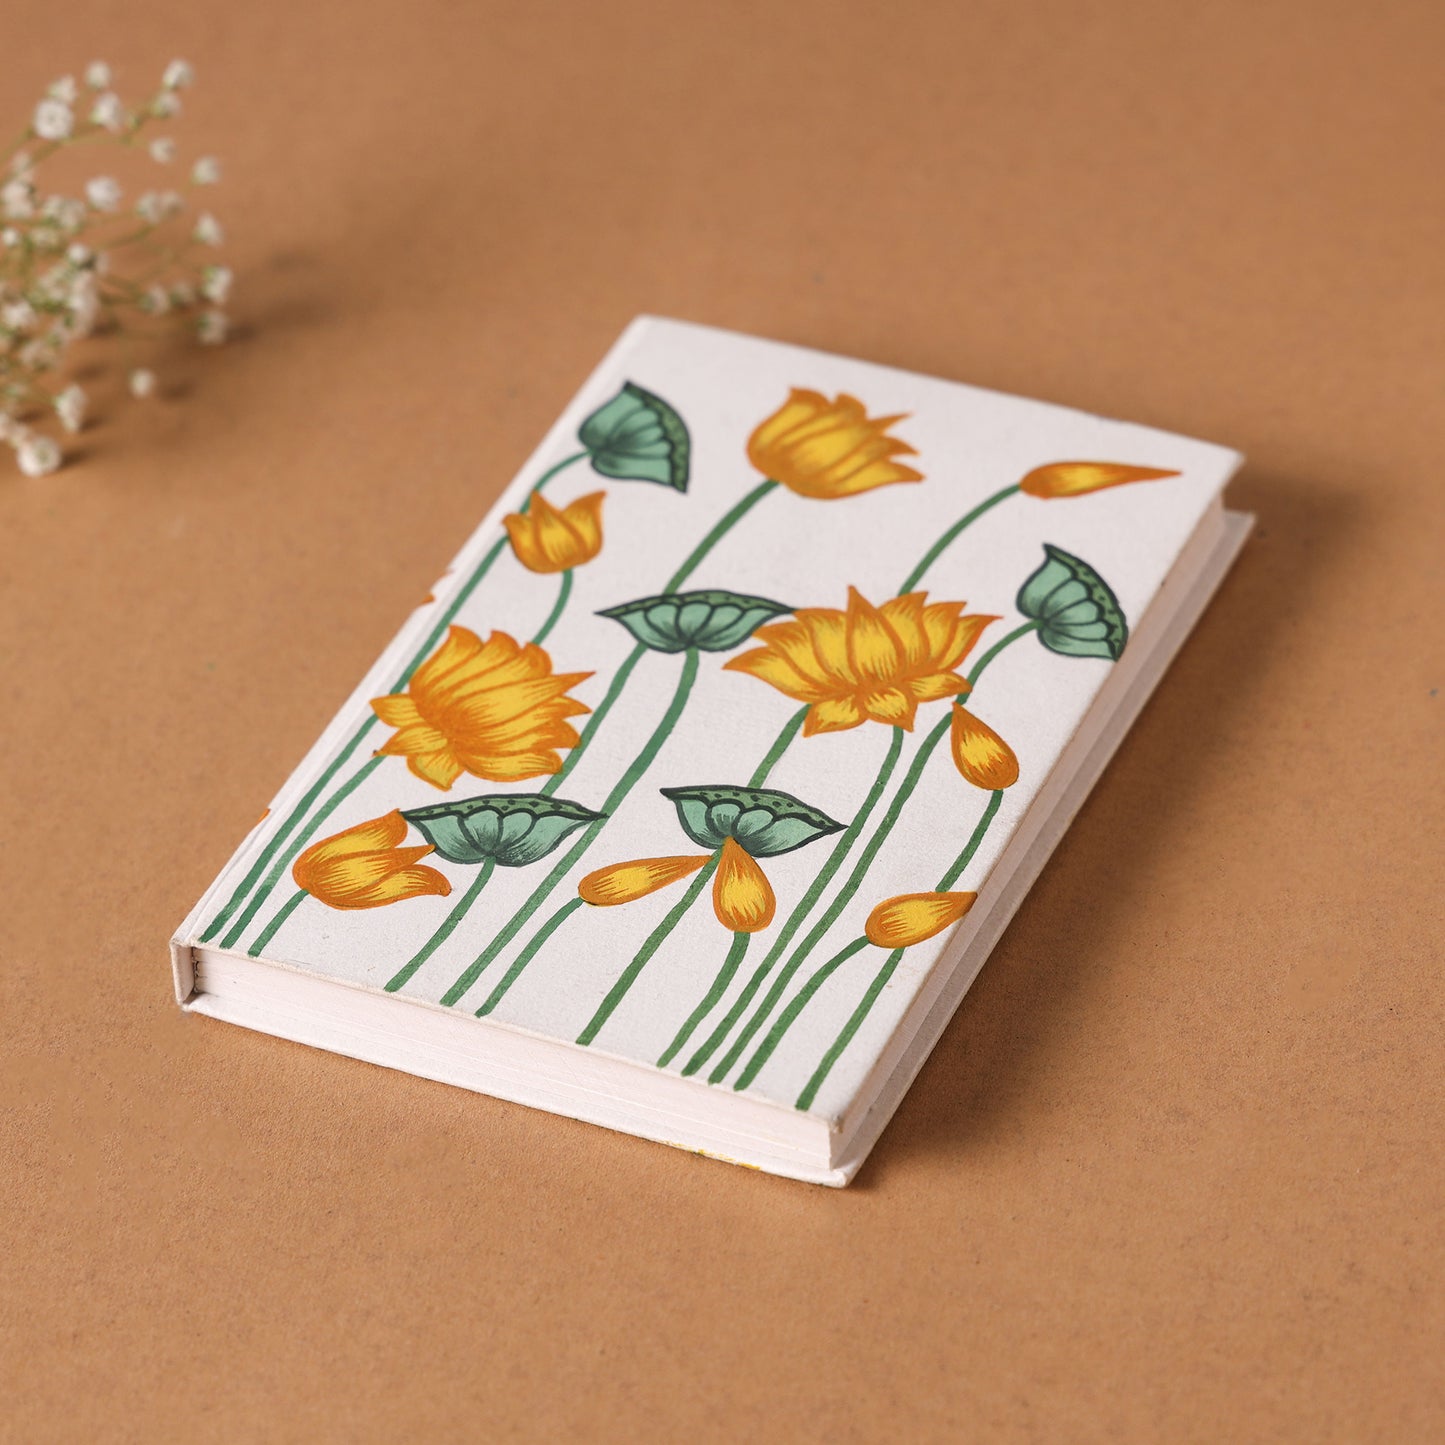 Kamal Talai in Lotus Handpainted Handmade Paper Notebook (6 x 4 in)